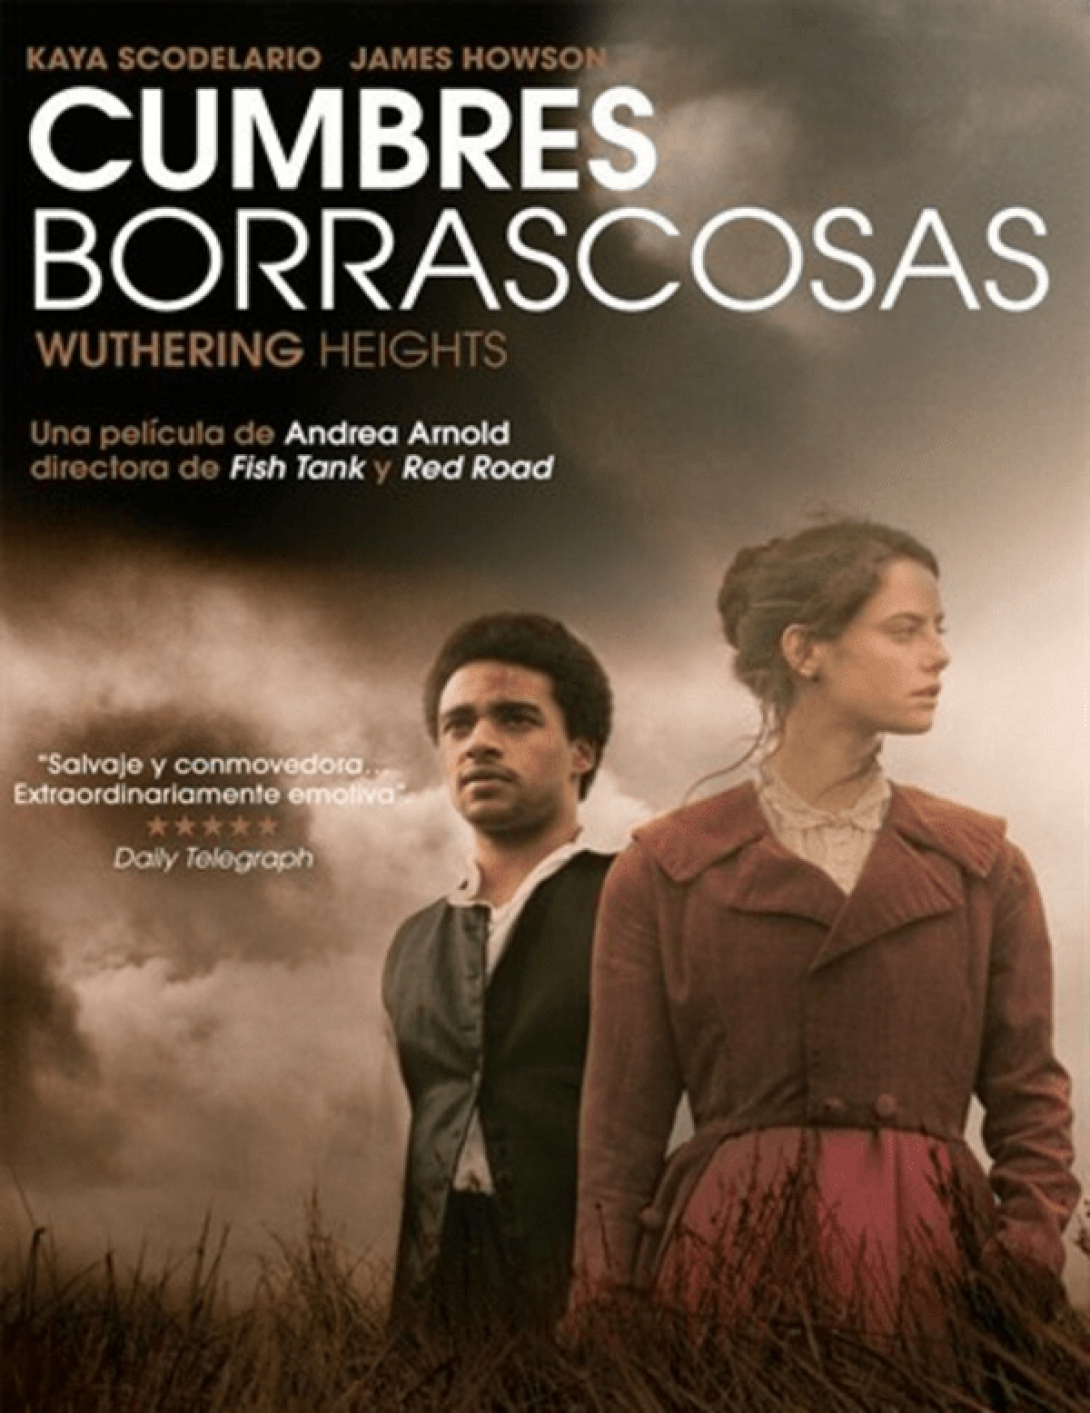 Cartel de la película “Cumbres Borrascosas”, dirigida por Andrea Arnold.